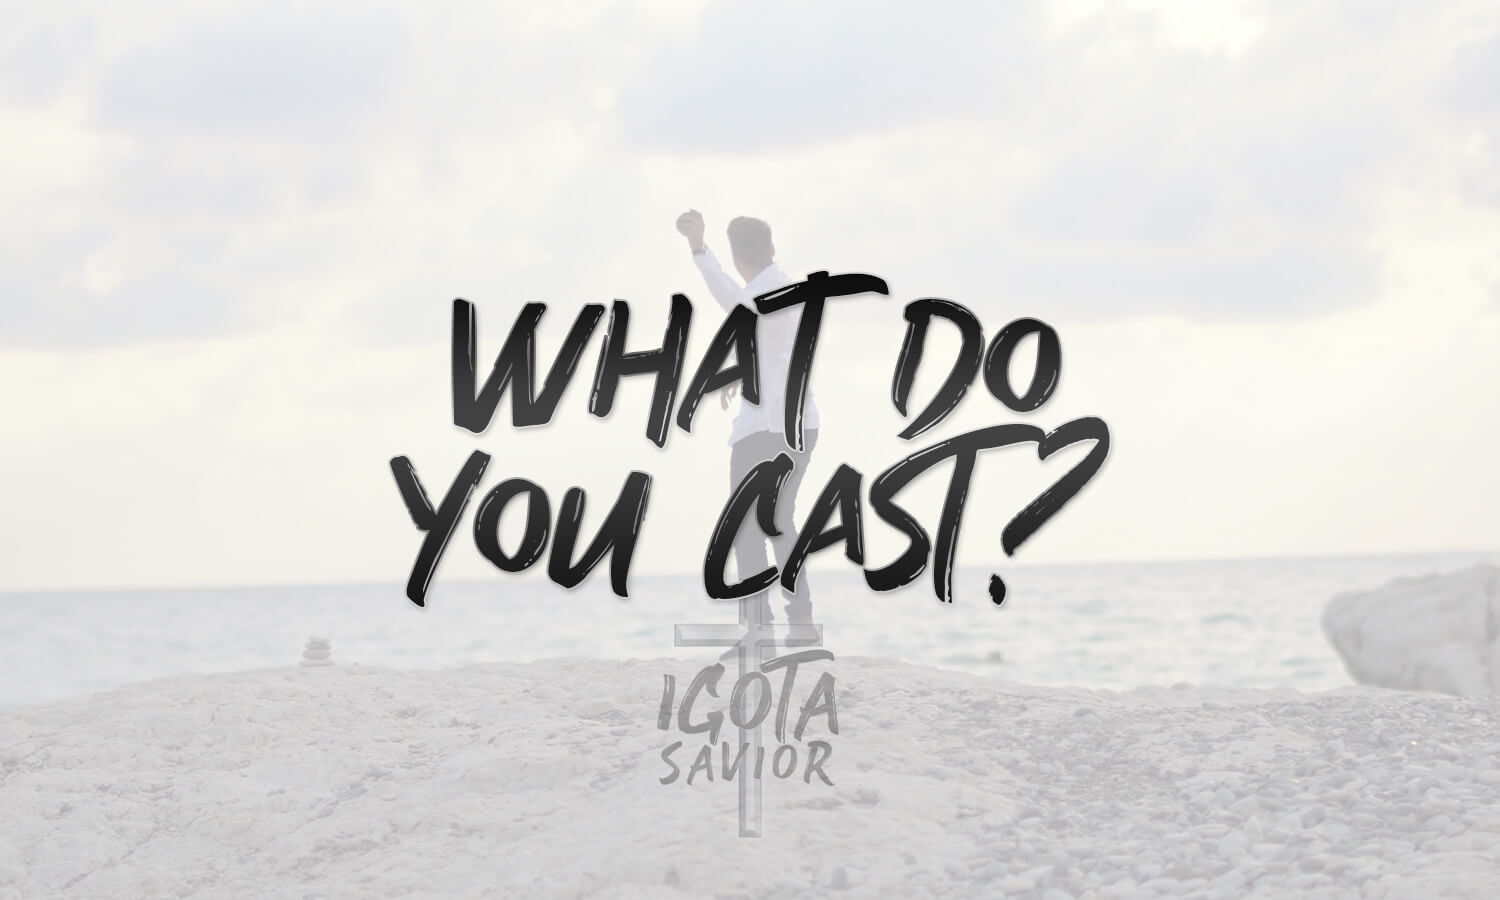 What Do You Cast?